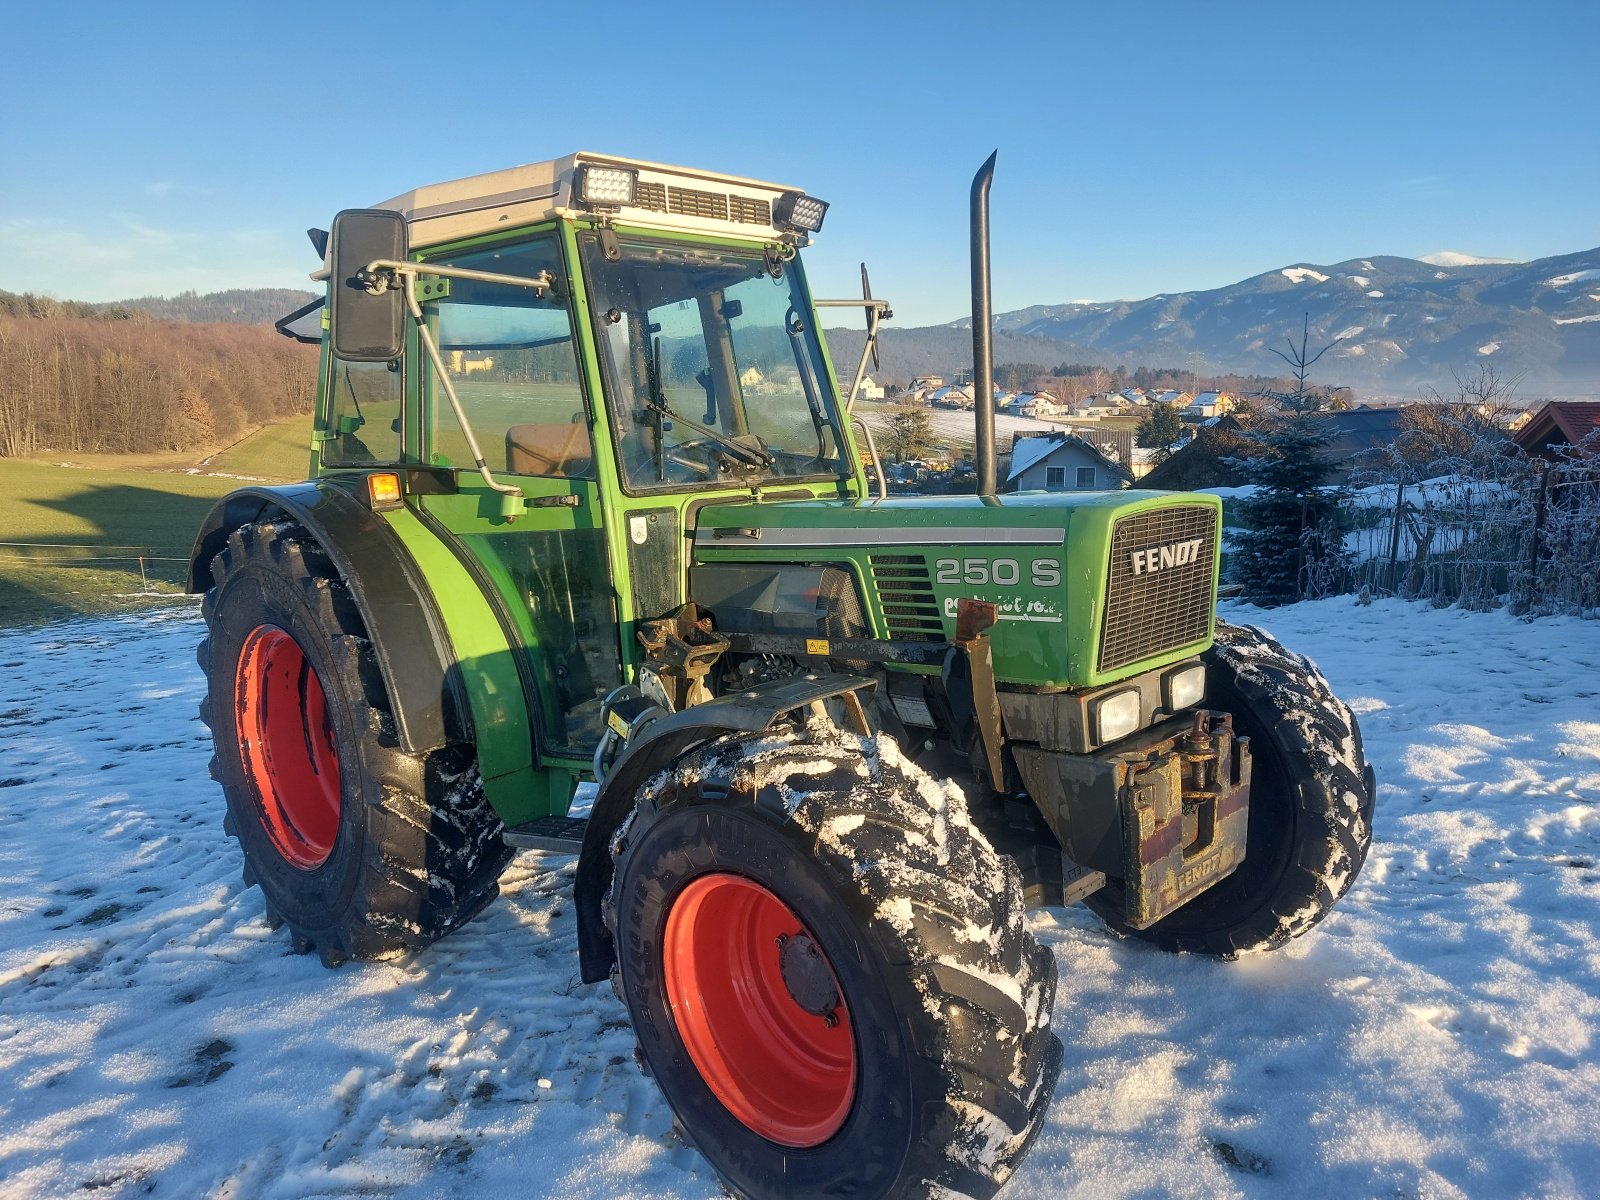 Traktor des Typs Fendt Farmer 250 S, Gebrauchtmaschine in St. Marein - Feistritz (Bild 1)